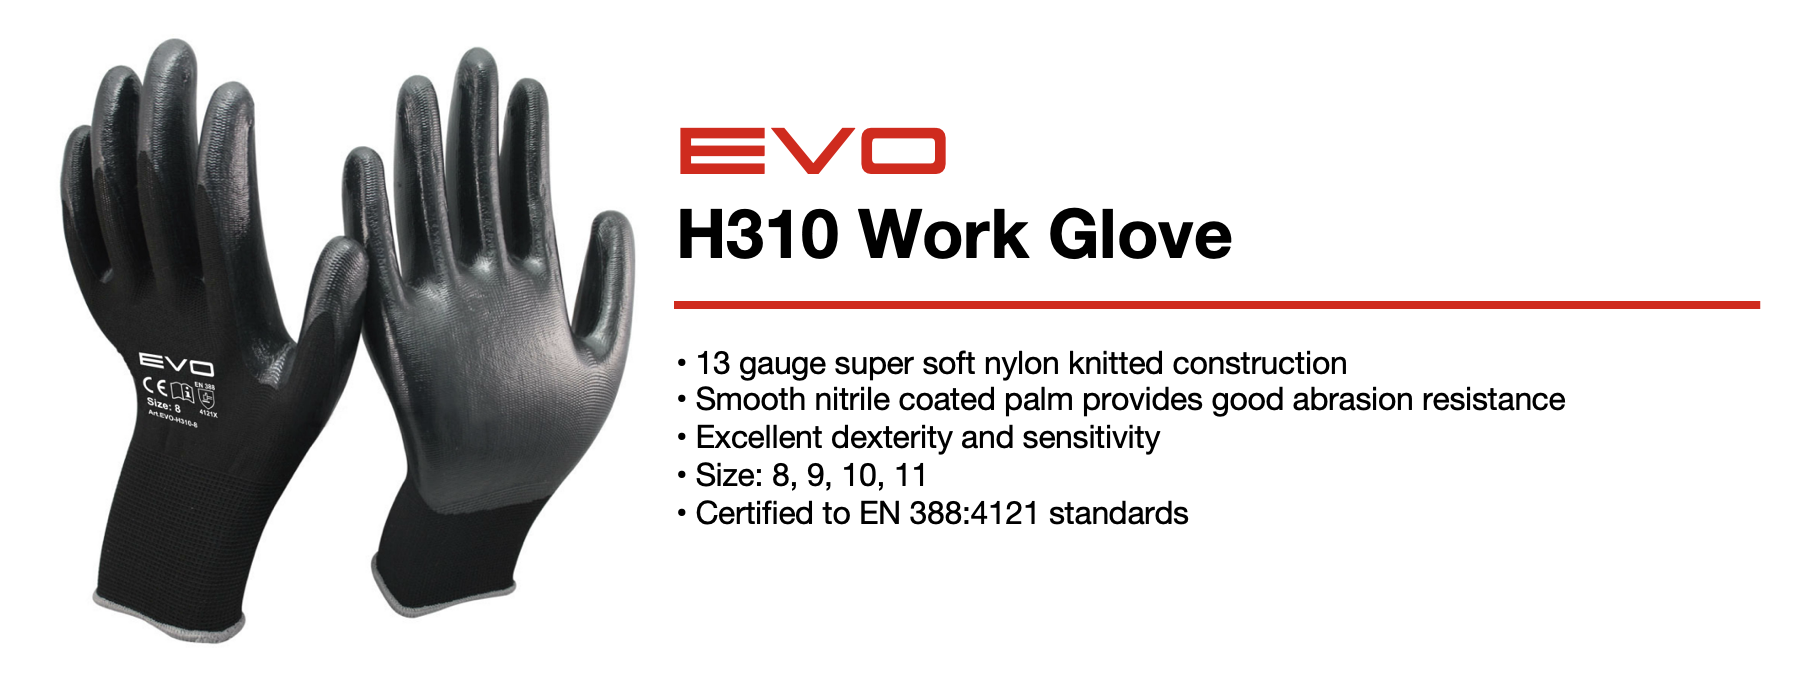 EVO H310 Work Glove